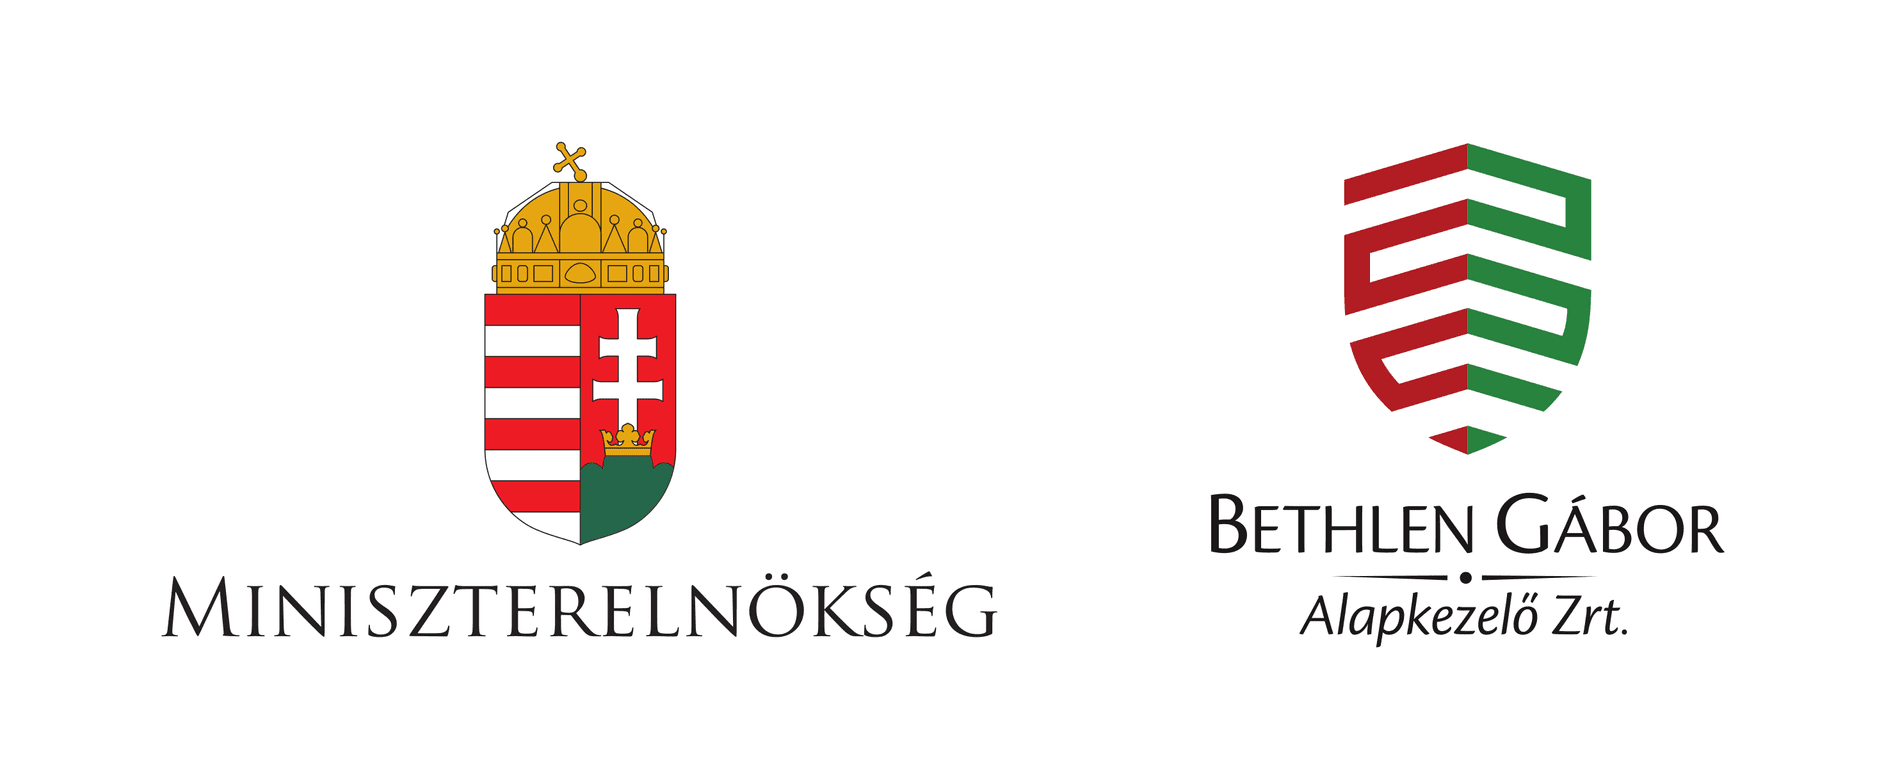 Bethlen Gábor Zrt és a Miniszterelnökség logója